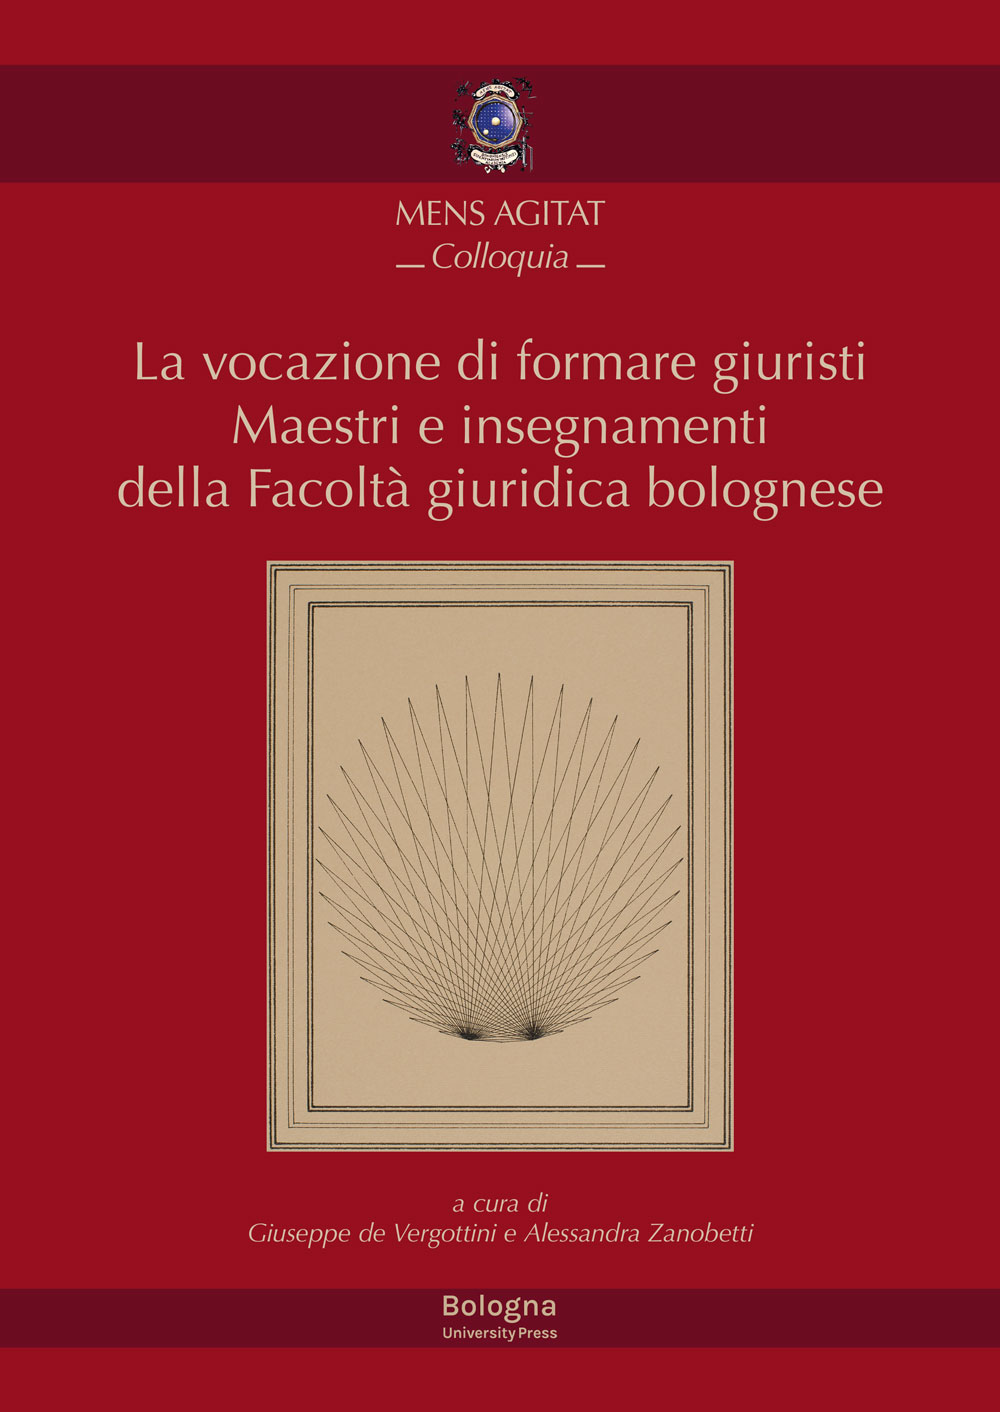 La vocazione di formare giuristi - Bologna University Press